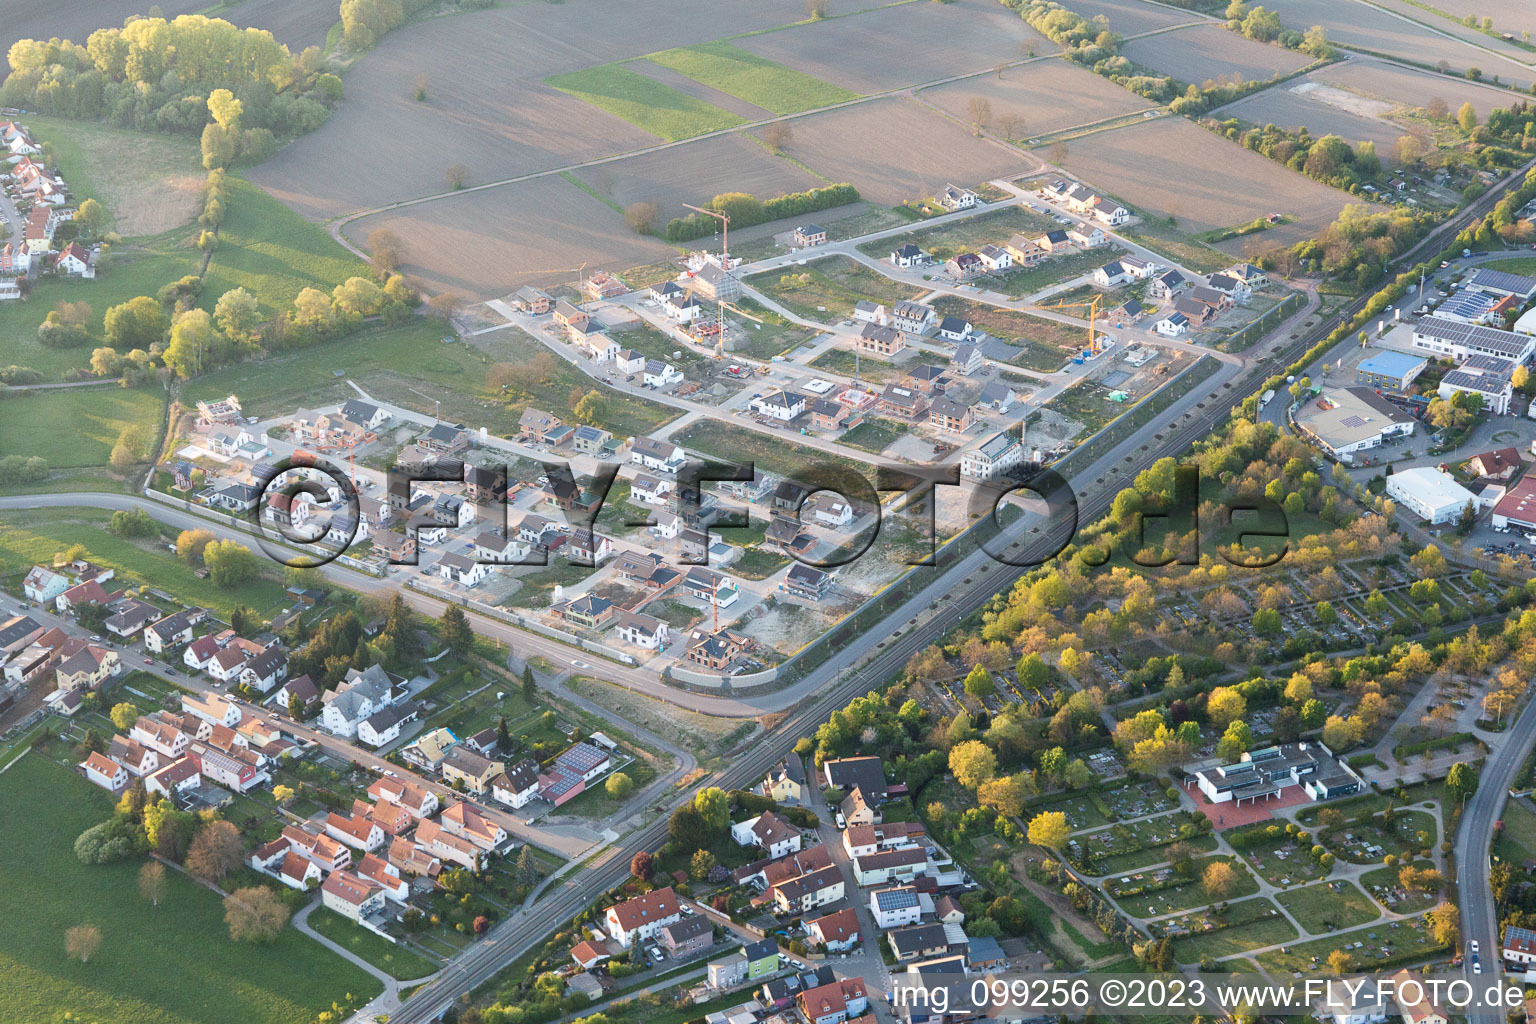 Wörth am Rhein im Bundesland Rheinland-Pfalz, Deutschland von der Drohne aus gesehen